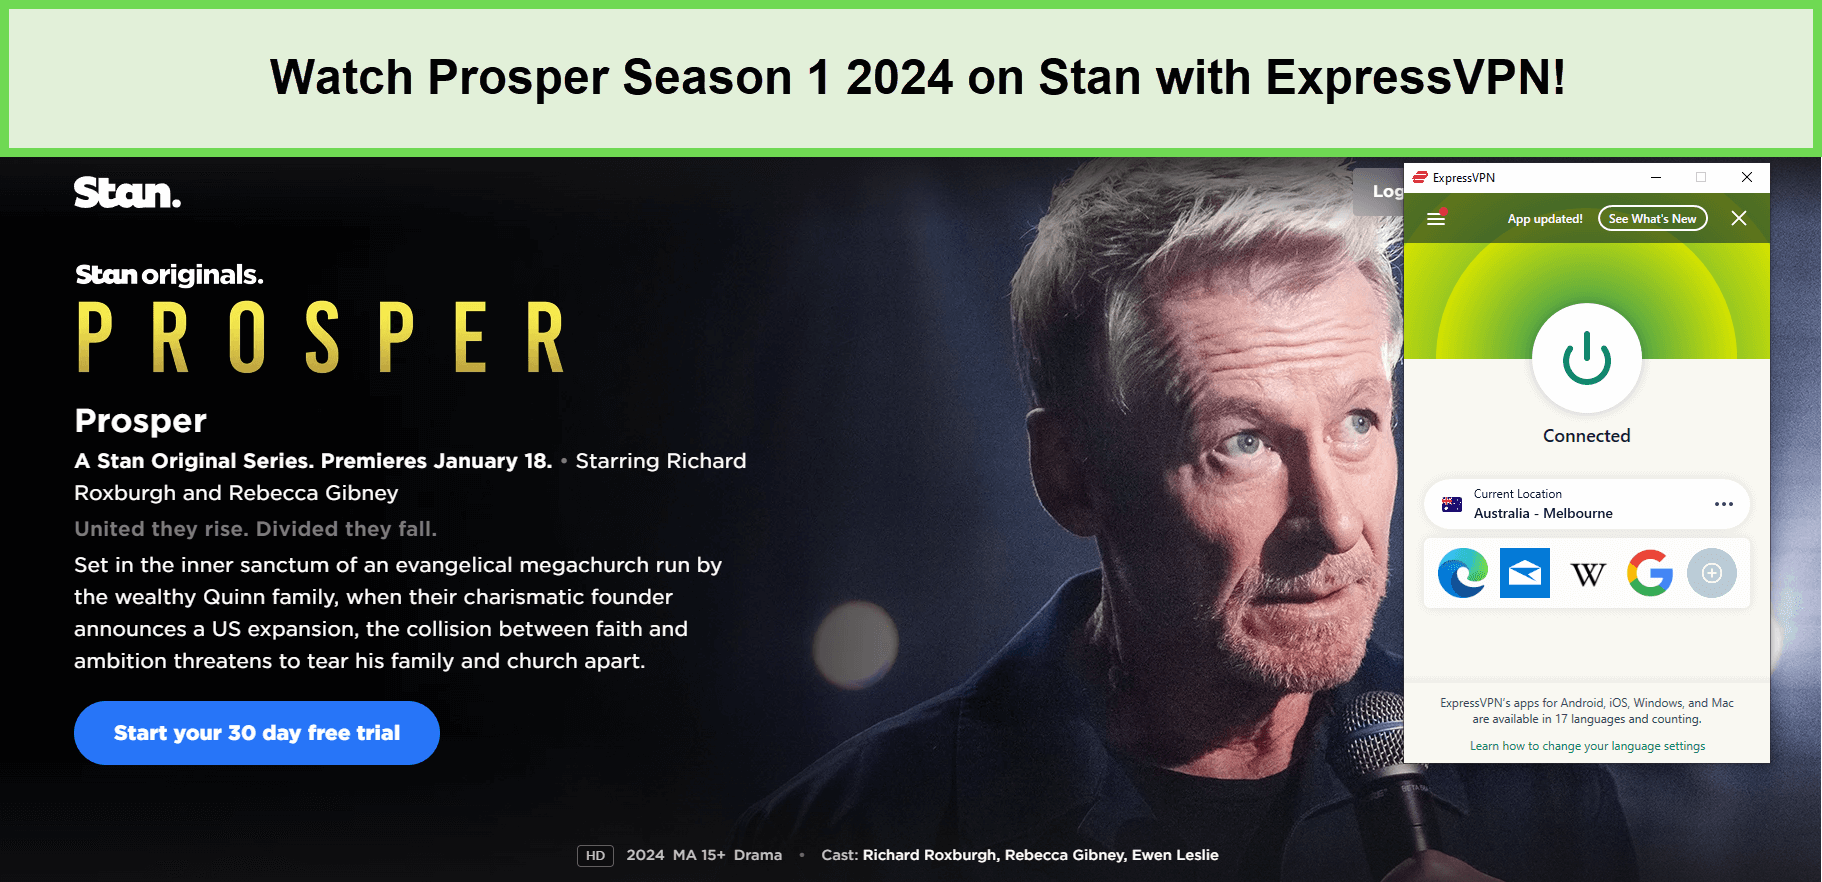 Watch-Prosper-Season-1-2024-in-New Zealand-on-Stan-with-ExpressVPN